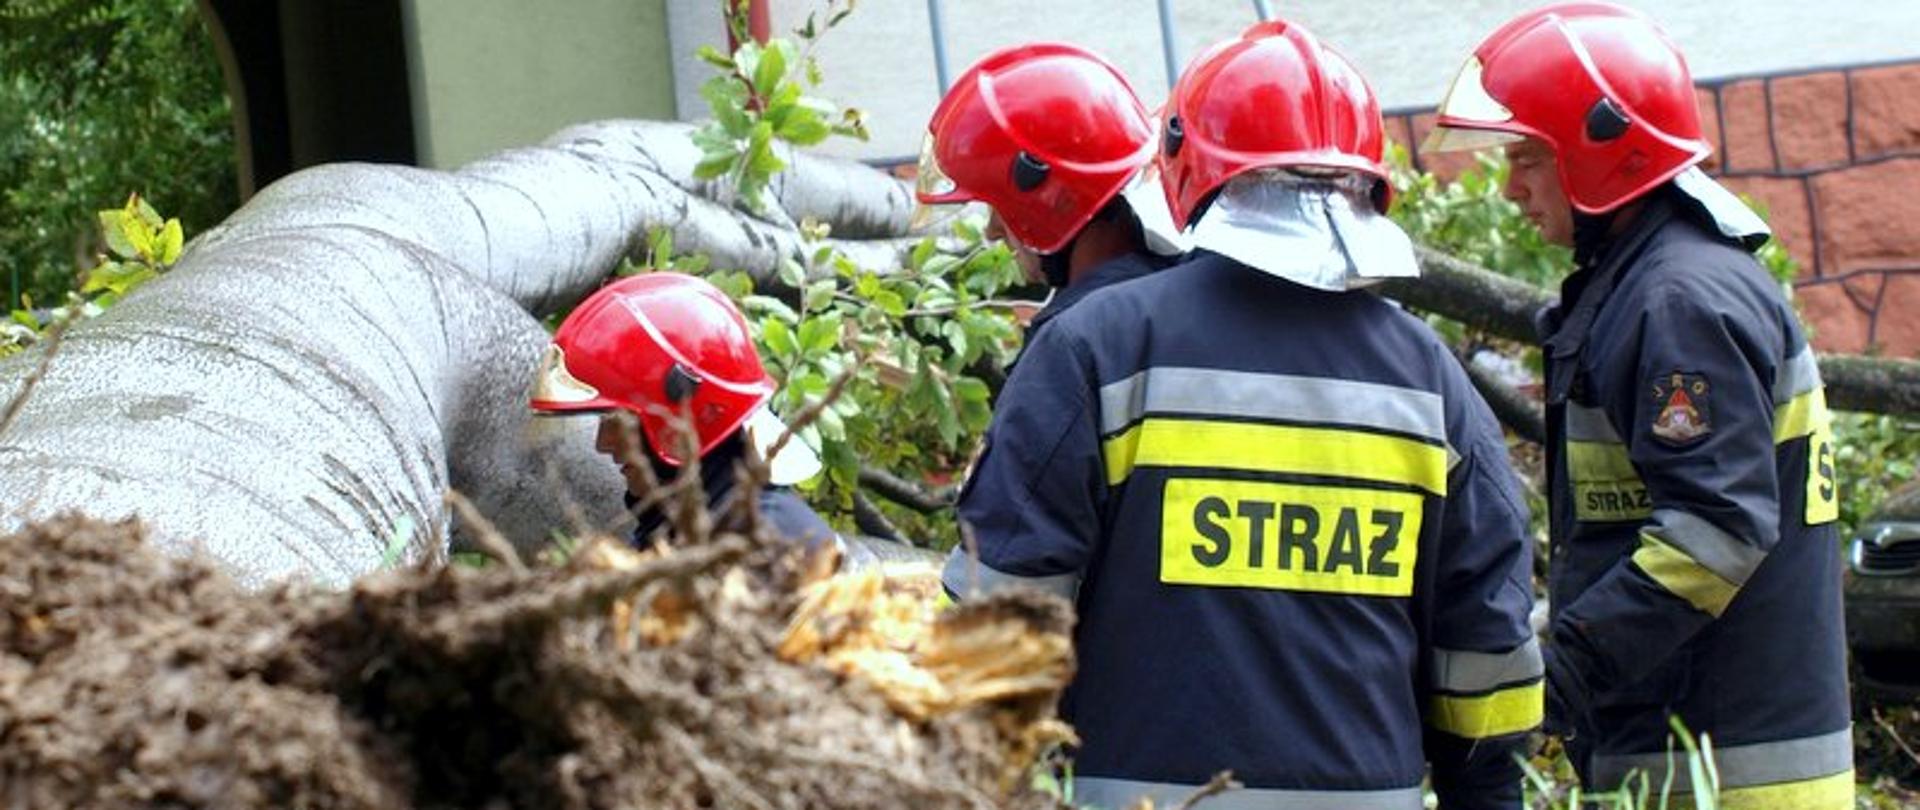 Na zdjęciu widać czterech strażaków, którzy usuwają leżące, powalone z korzeniami drzewo. Strażacy ubrani są w ubrania specjalne (nomex) i hełmy